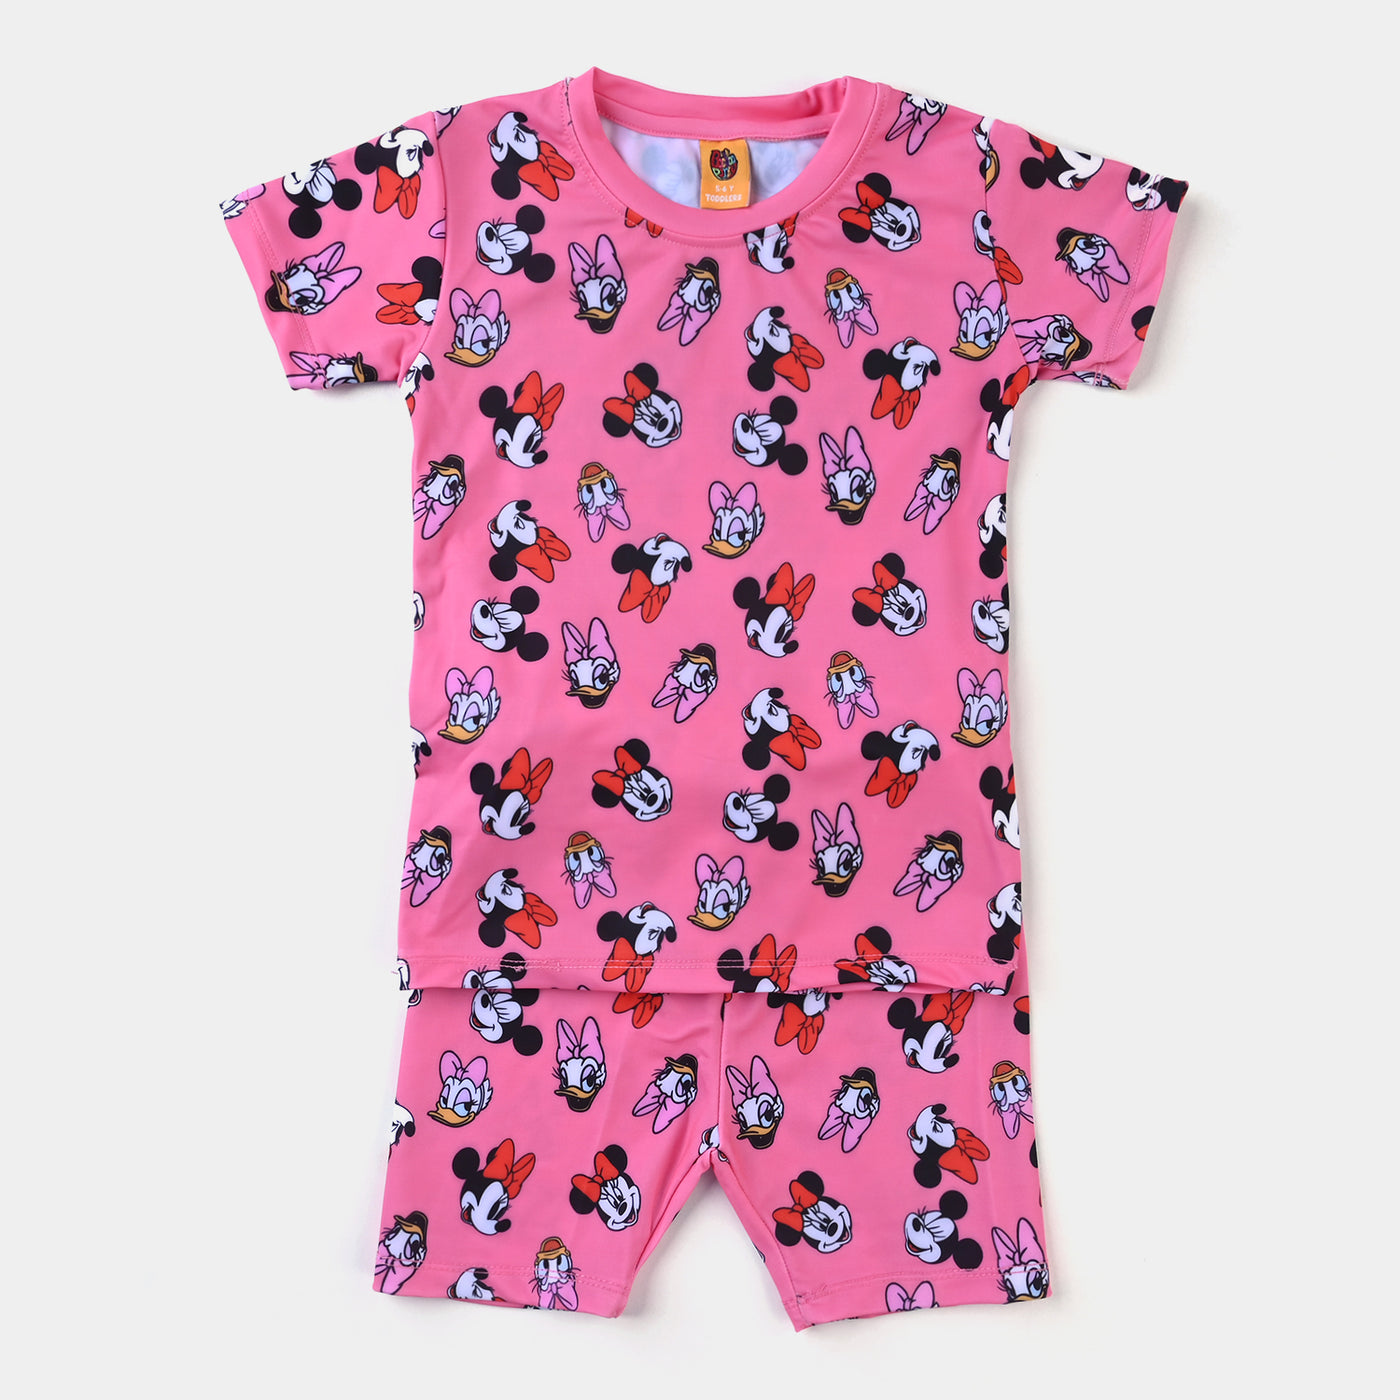 Girls Nylon Swimming Suit Printed -Pink